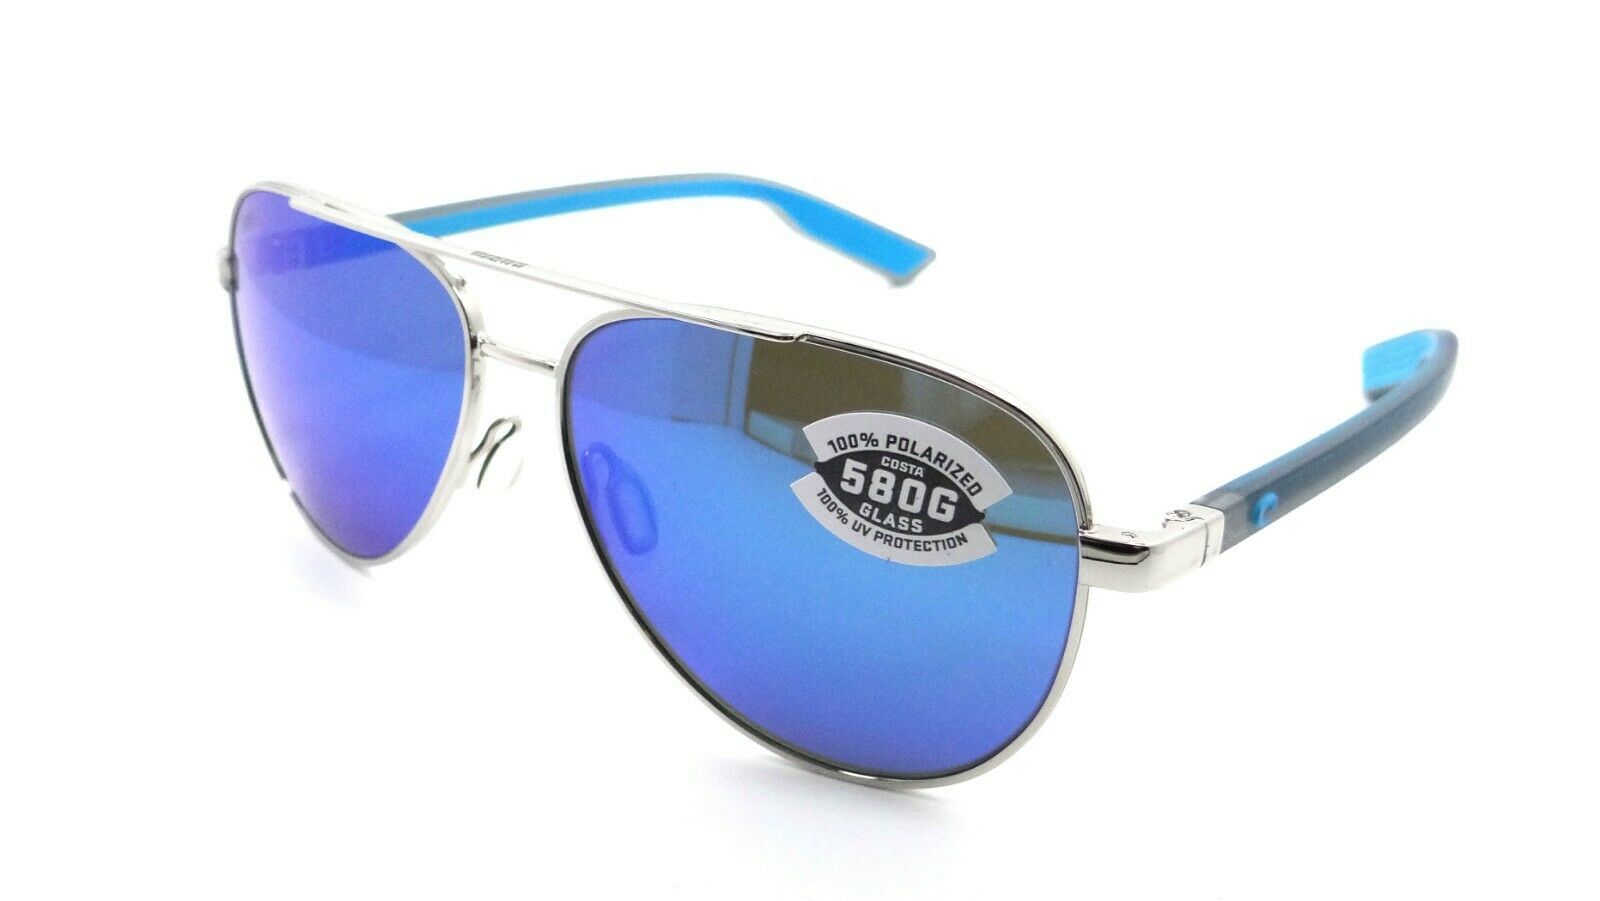 Costa Del Mar Sunglasses Peli 57-14-140 Shiny Silver / Blue Mirror 580G Glass-0097963844499-classypw.com-1